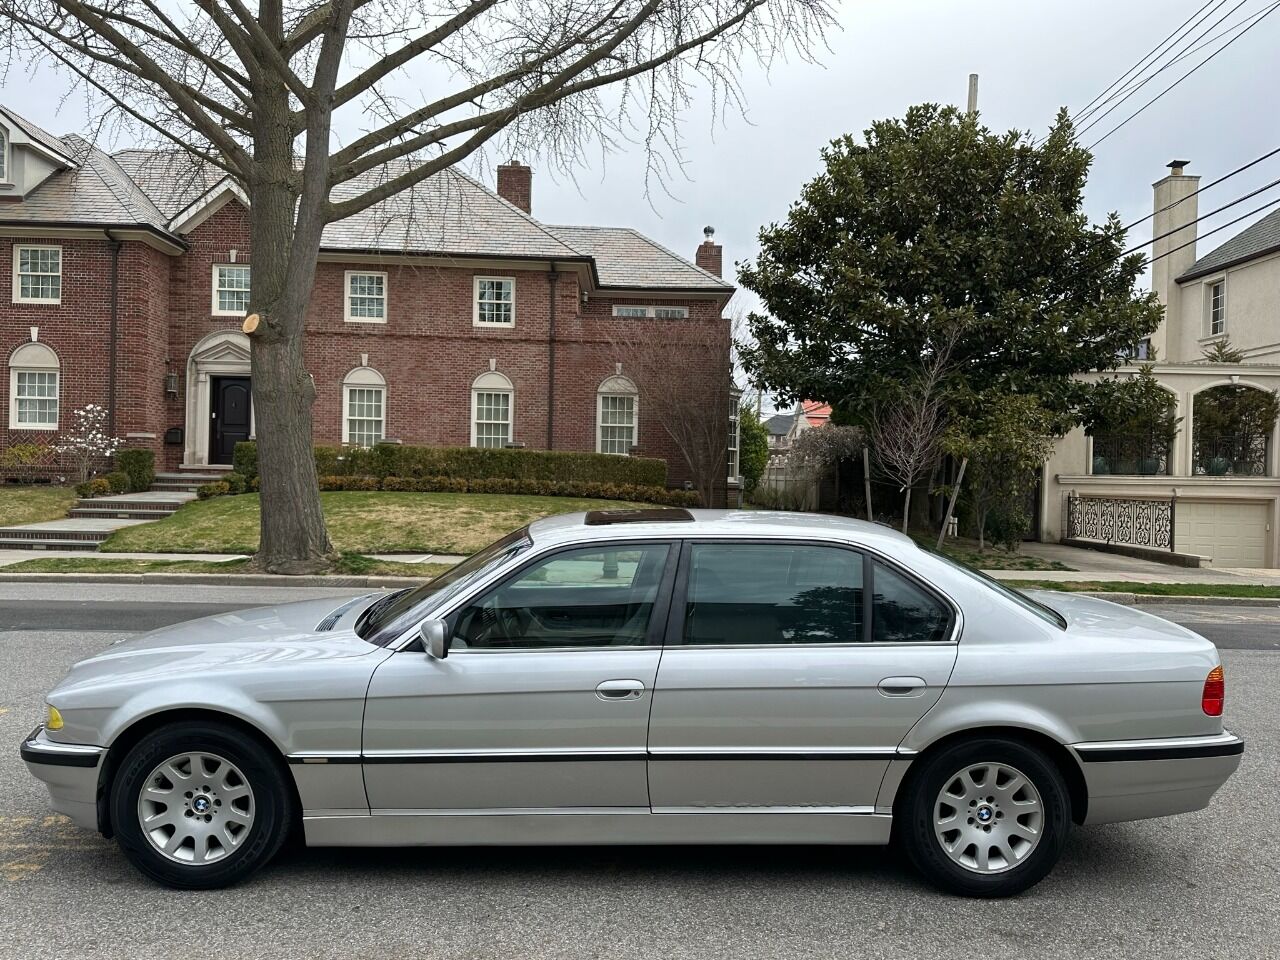 2001 BMW 740i Sedan - $8,900